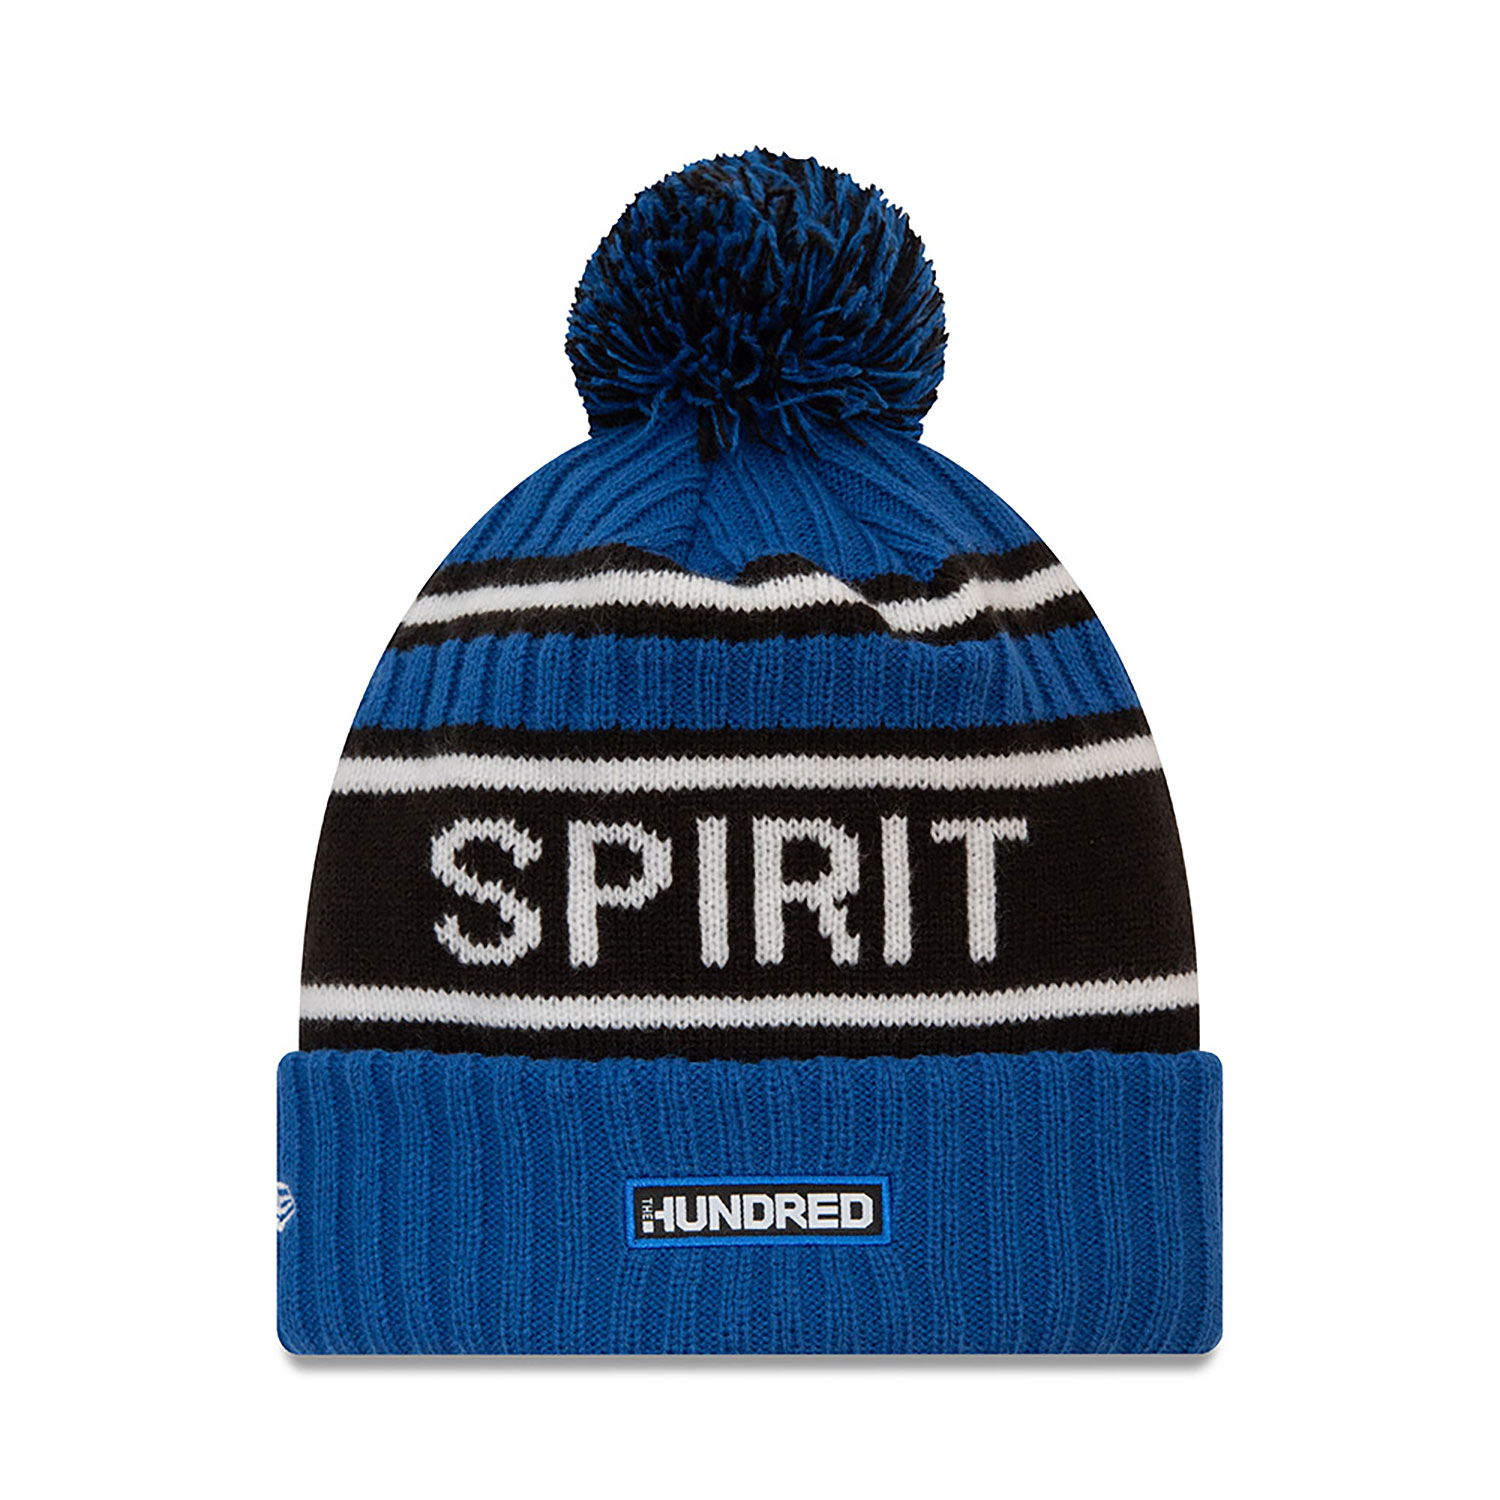 London Spirit The Hundred Blue Bobble Knit Beanie Hat